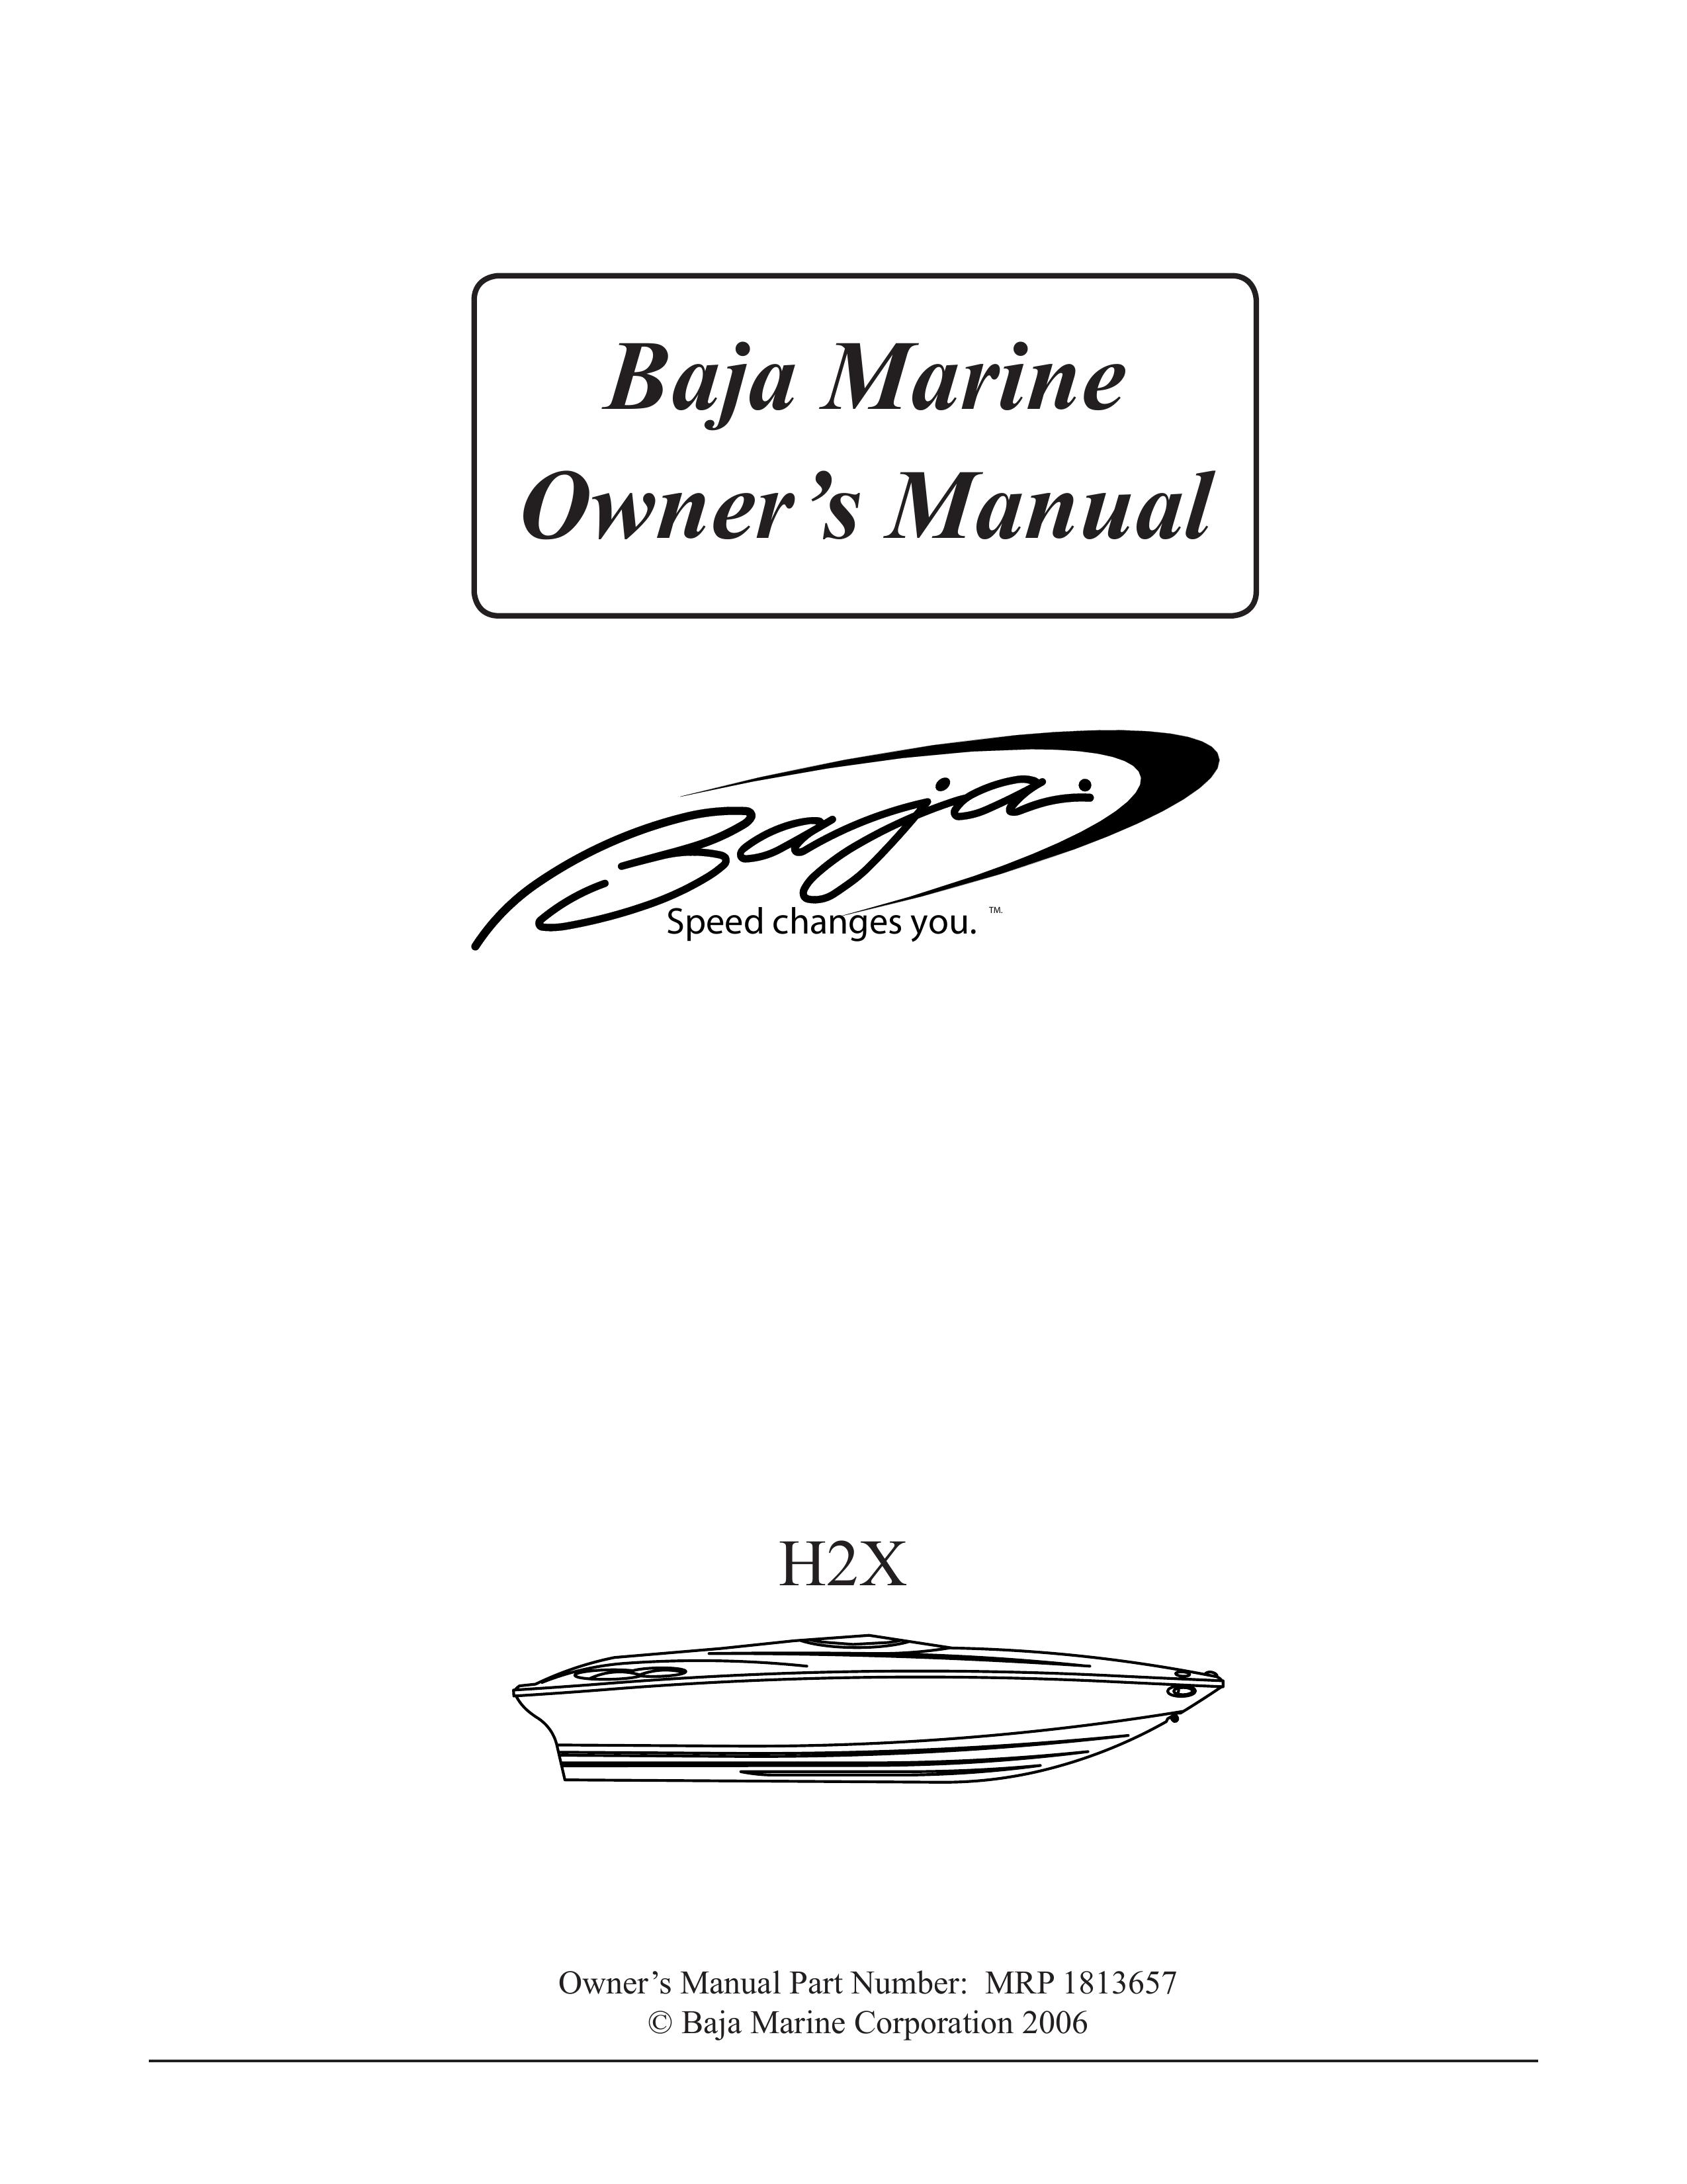 Baja Marine H2X Boat User Manual